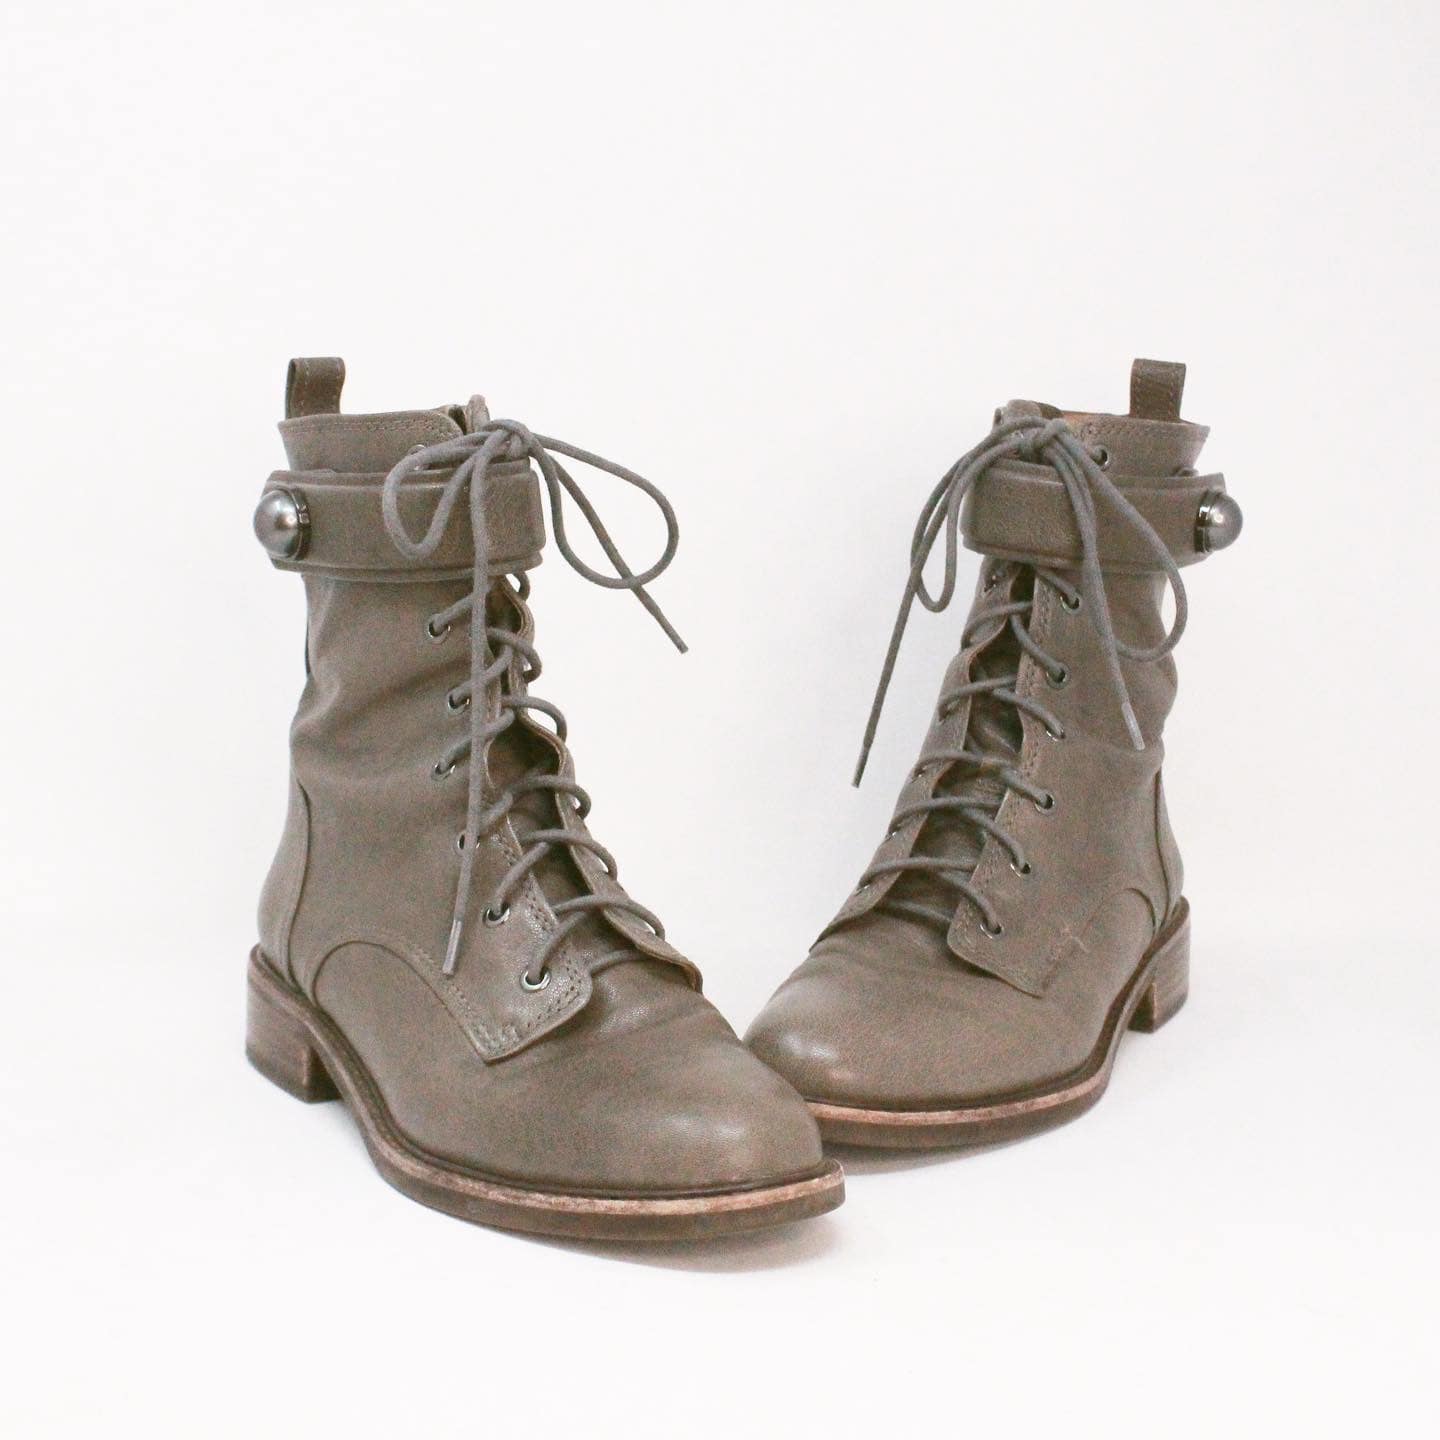 LOUISE ET CIE 38961 Gray Leather Boots US 7.5 EU 37.5 1